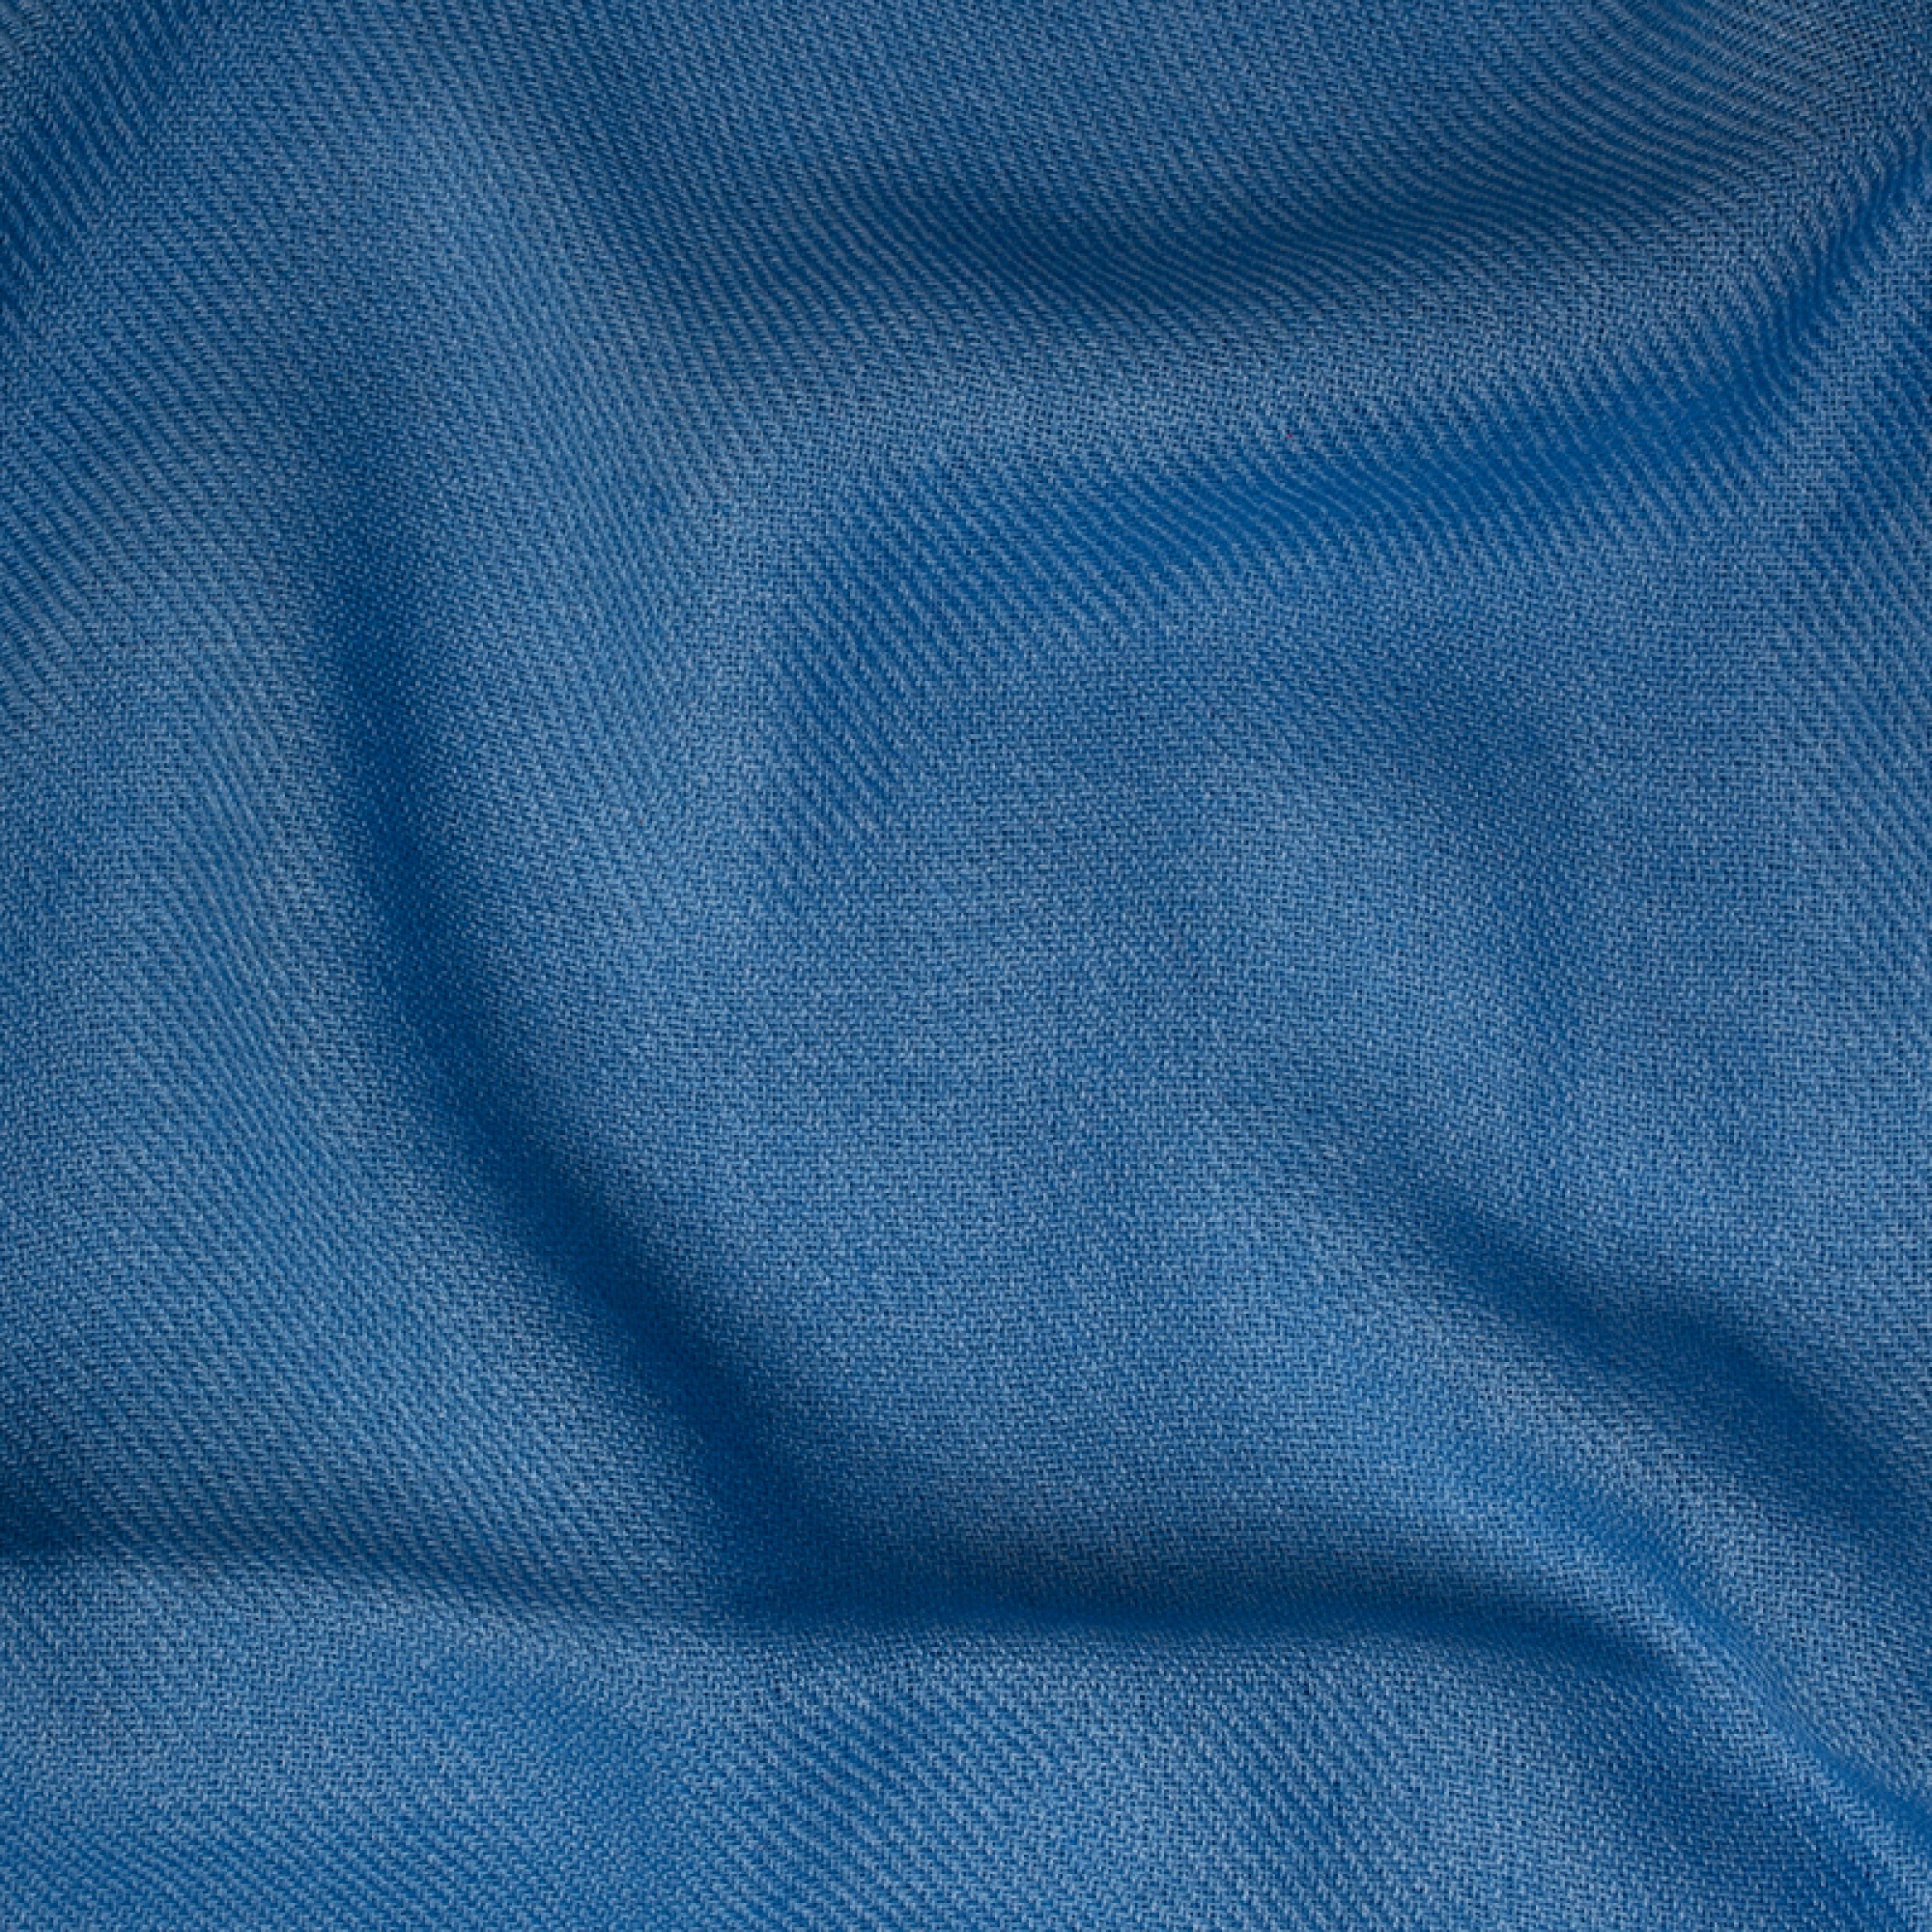 Cachemire accessoires couvertures plaids toodoo plain s 140 x 200 bleu miro 140 x 200 cm